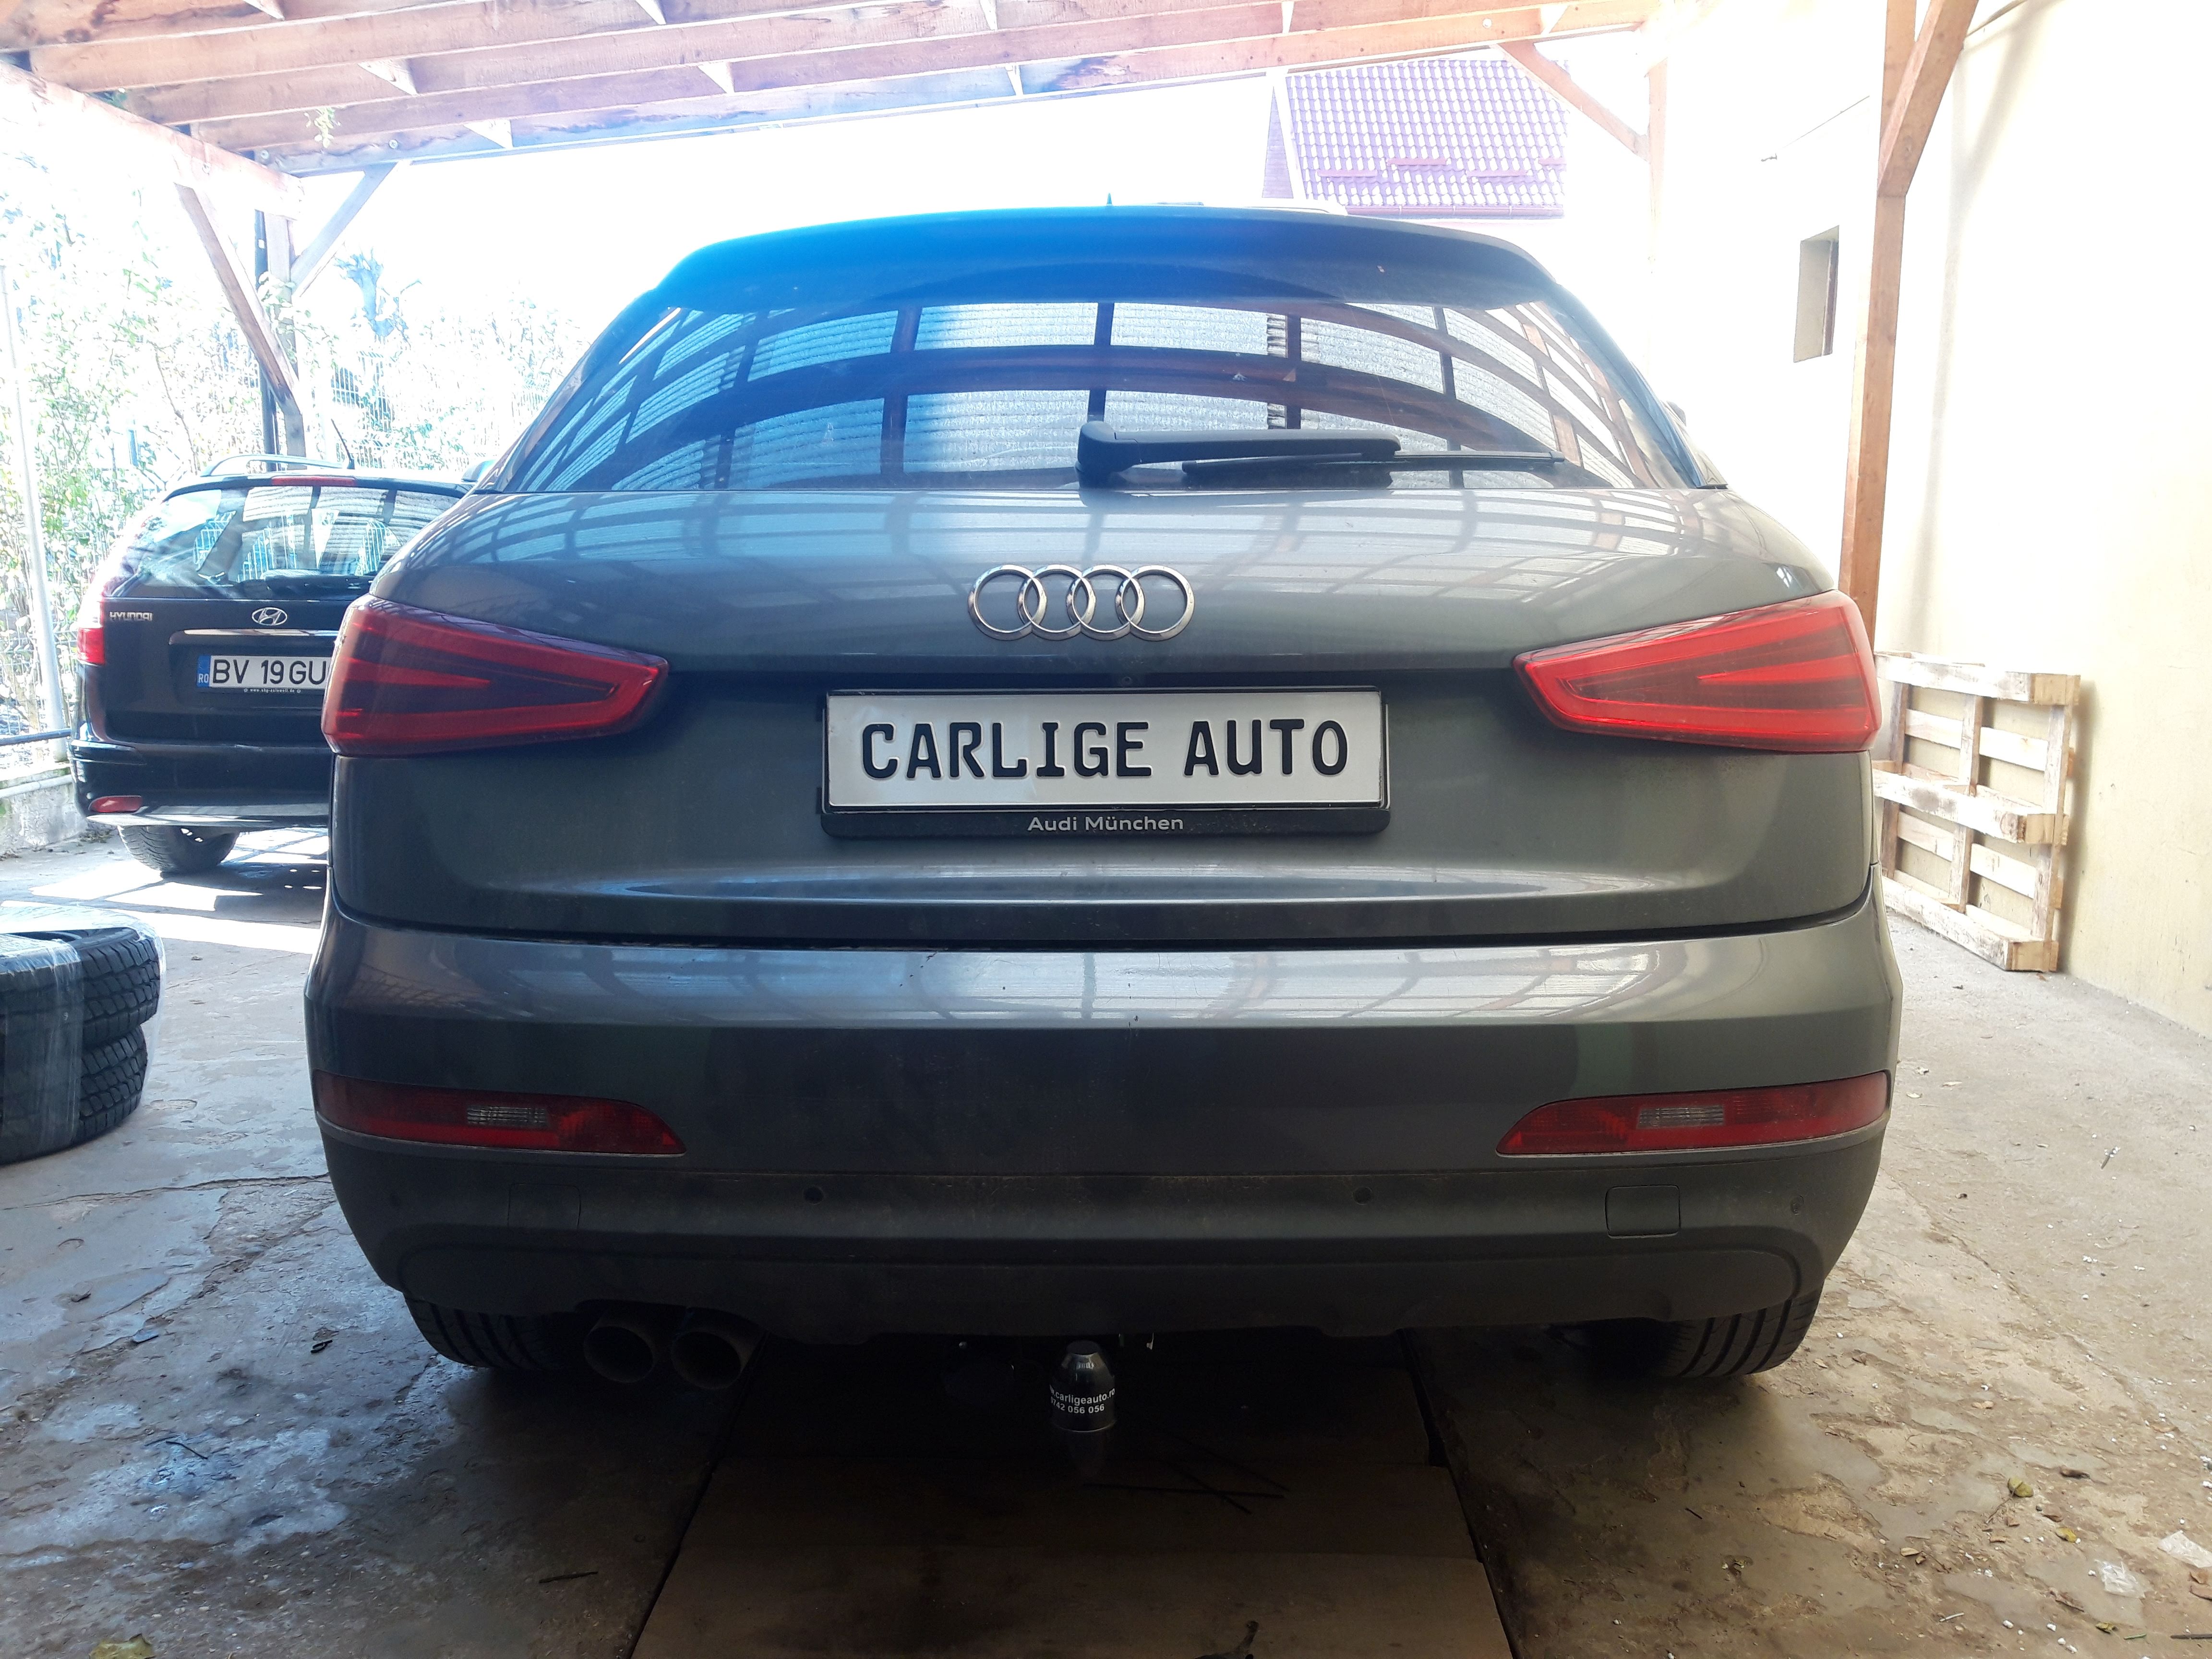 Carlig remorcare Audi Q3 SUV